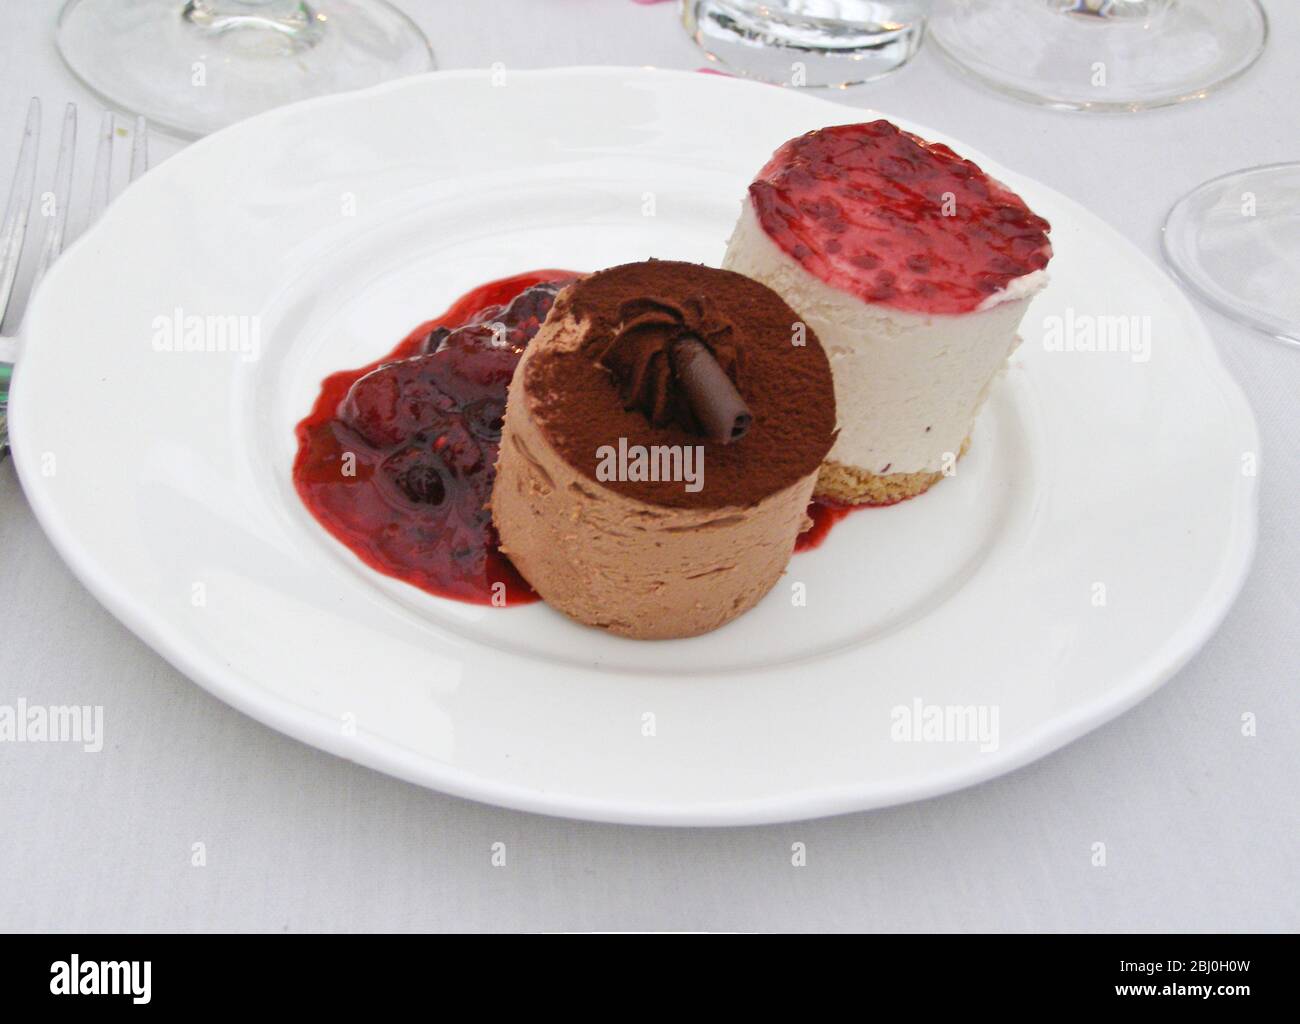 Schokolade und Vanillemousse mit Sumerobstcoulis - Dessert beim Hochzeitsempfang - Stockfoto